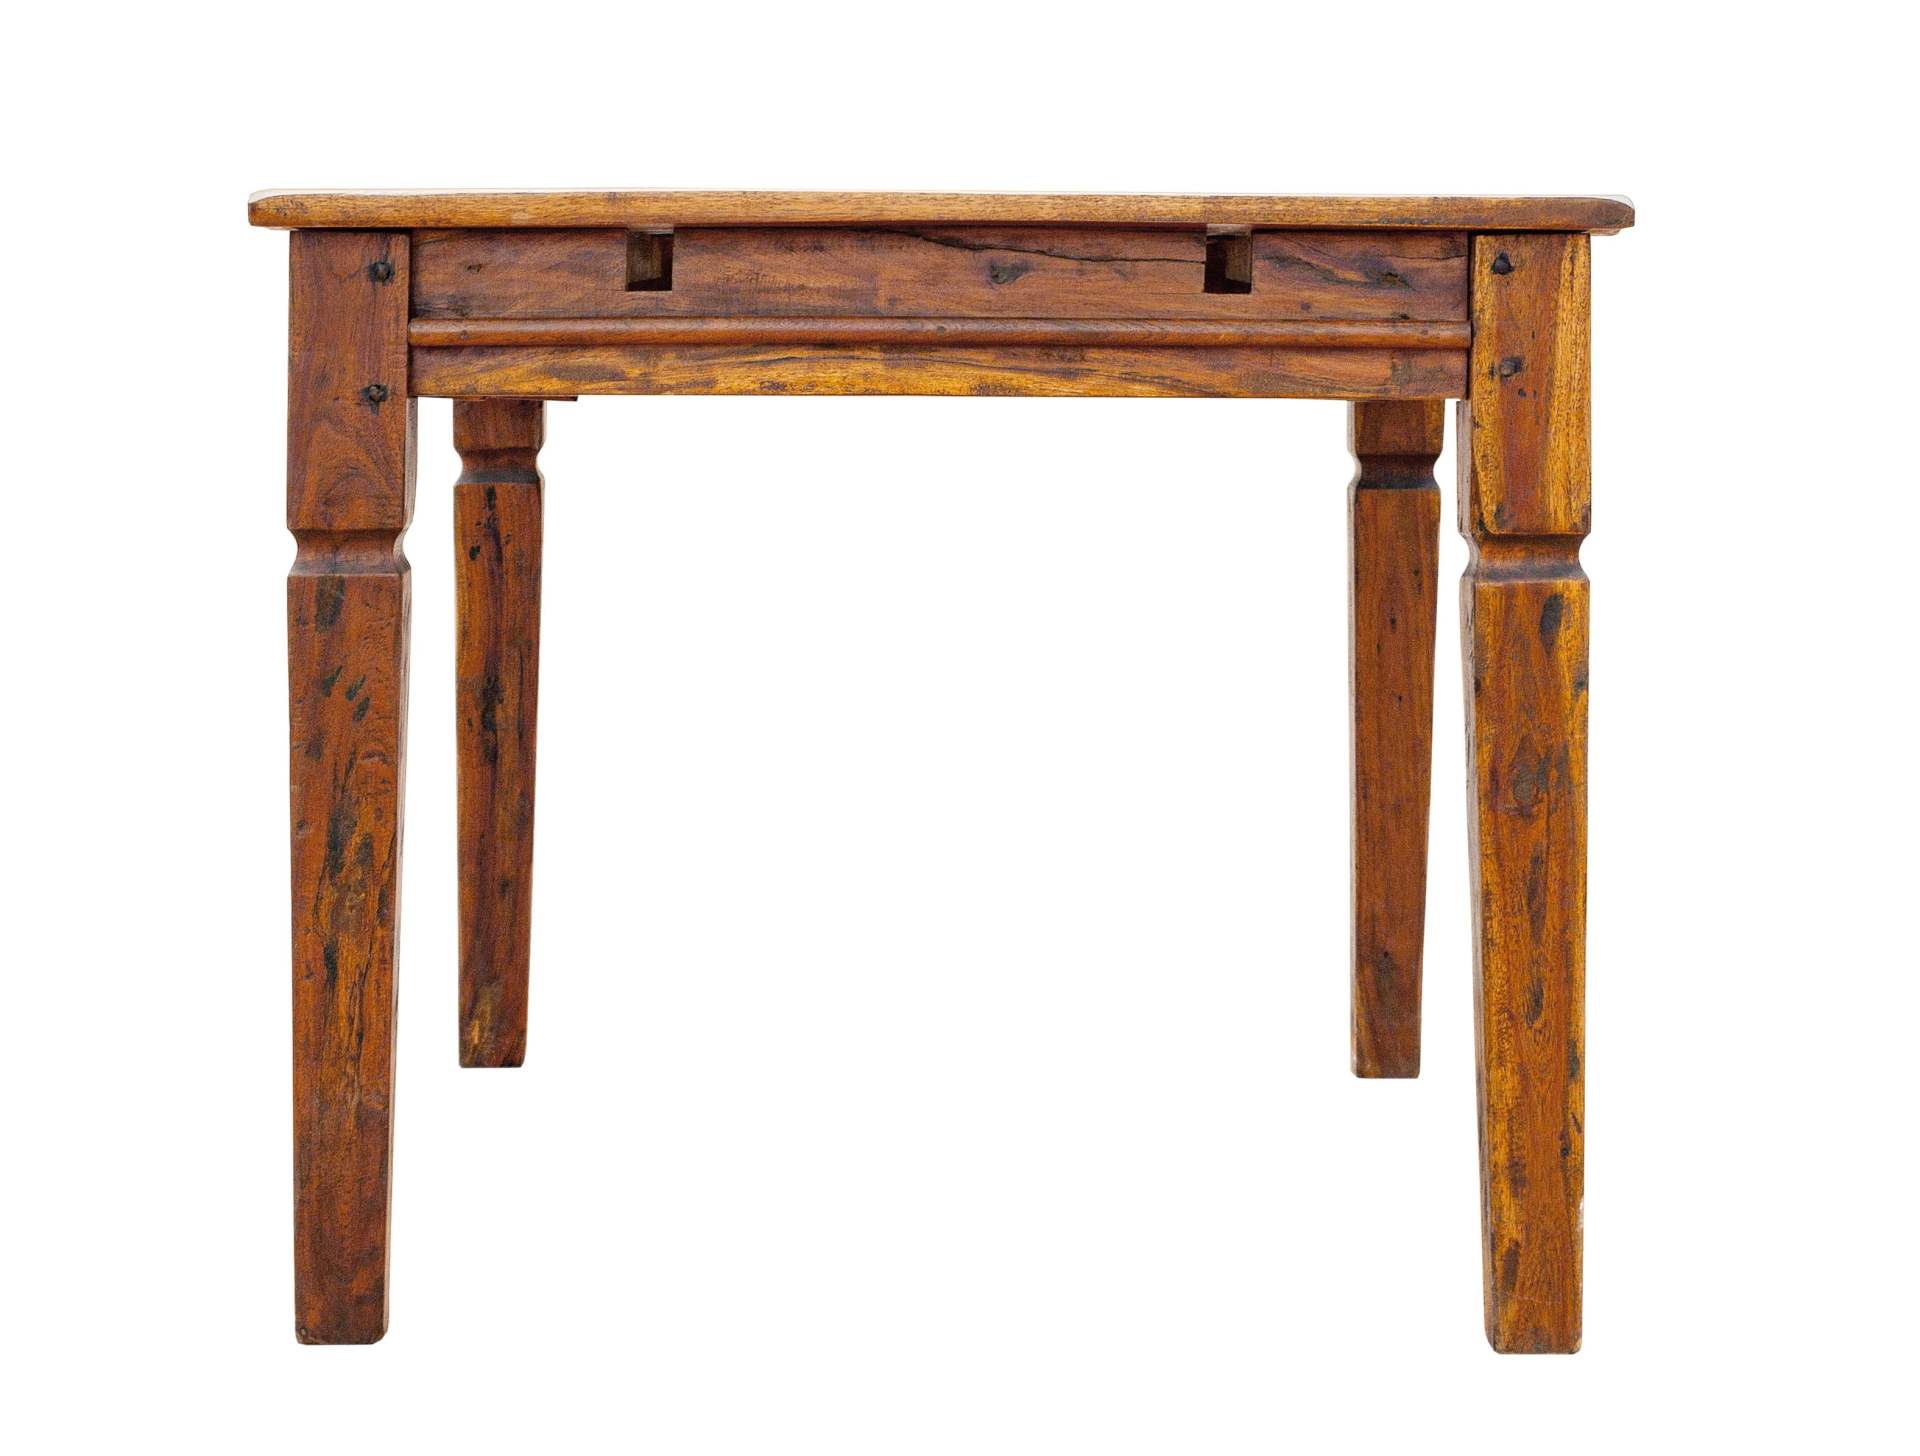 Der Esstisch Chateaux überzeugt mit seinem klassischem Design. Gefertigt wurde er aus Akazienholz, welches einen natürlichen Farbton besitzt. Das Gestell des Tisches ist auch aus Akazienholz. Der Tisch ist ausziehbar von einer Breite von 120 cm auf 200 cm